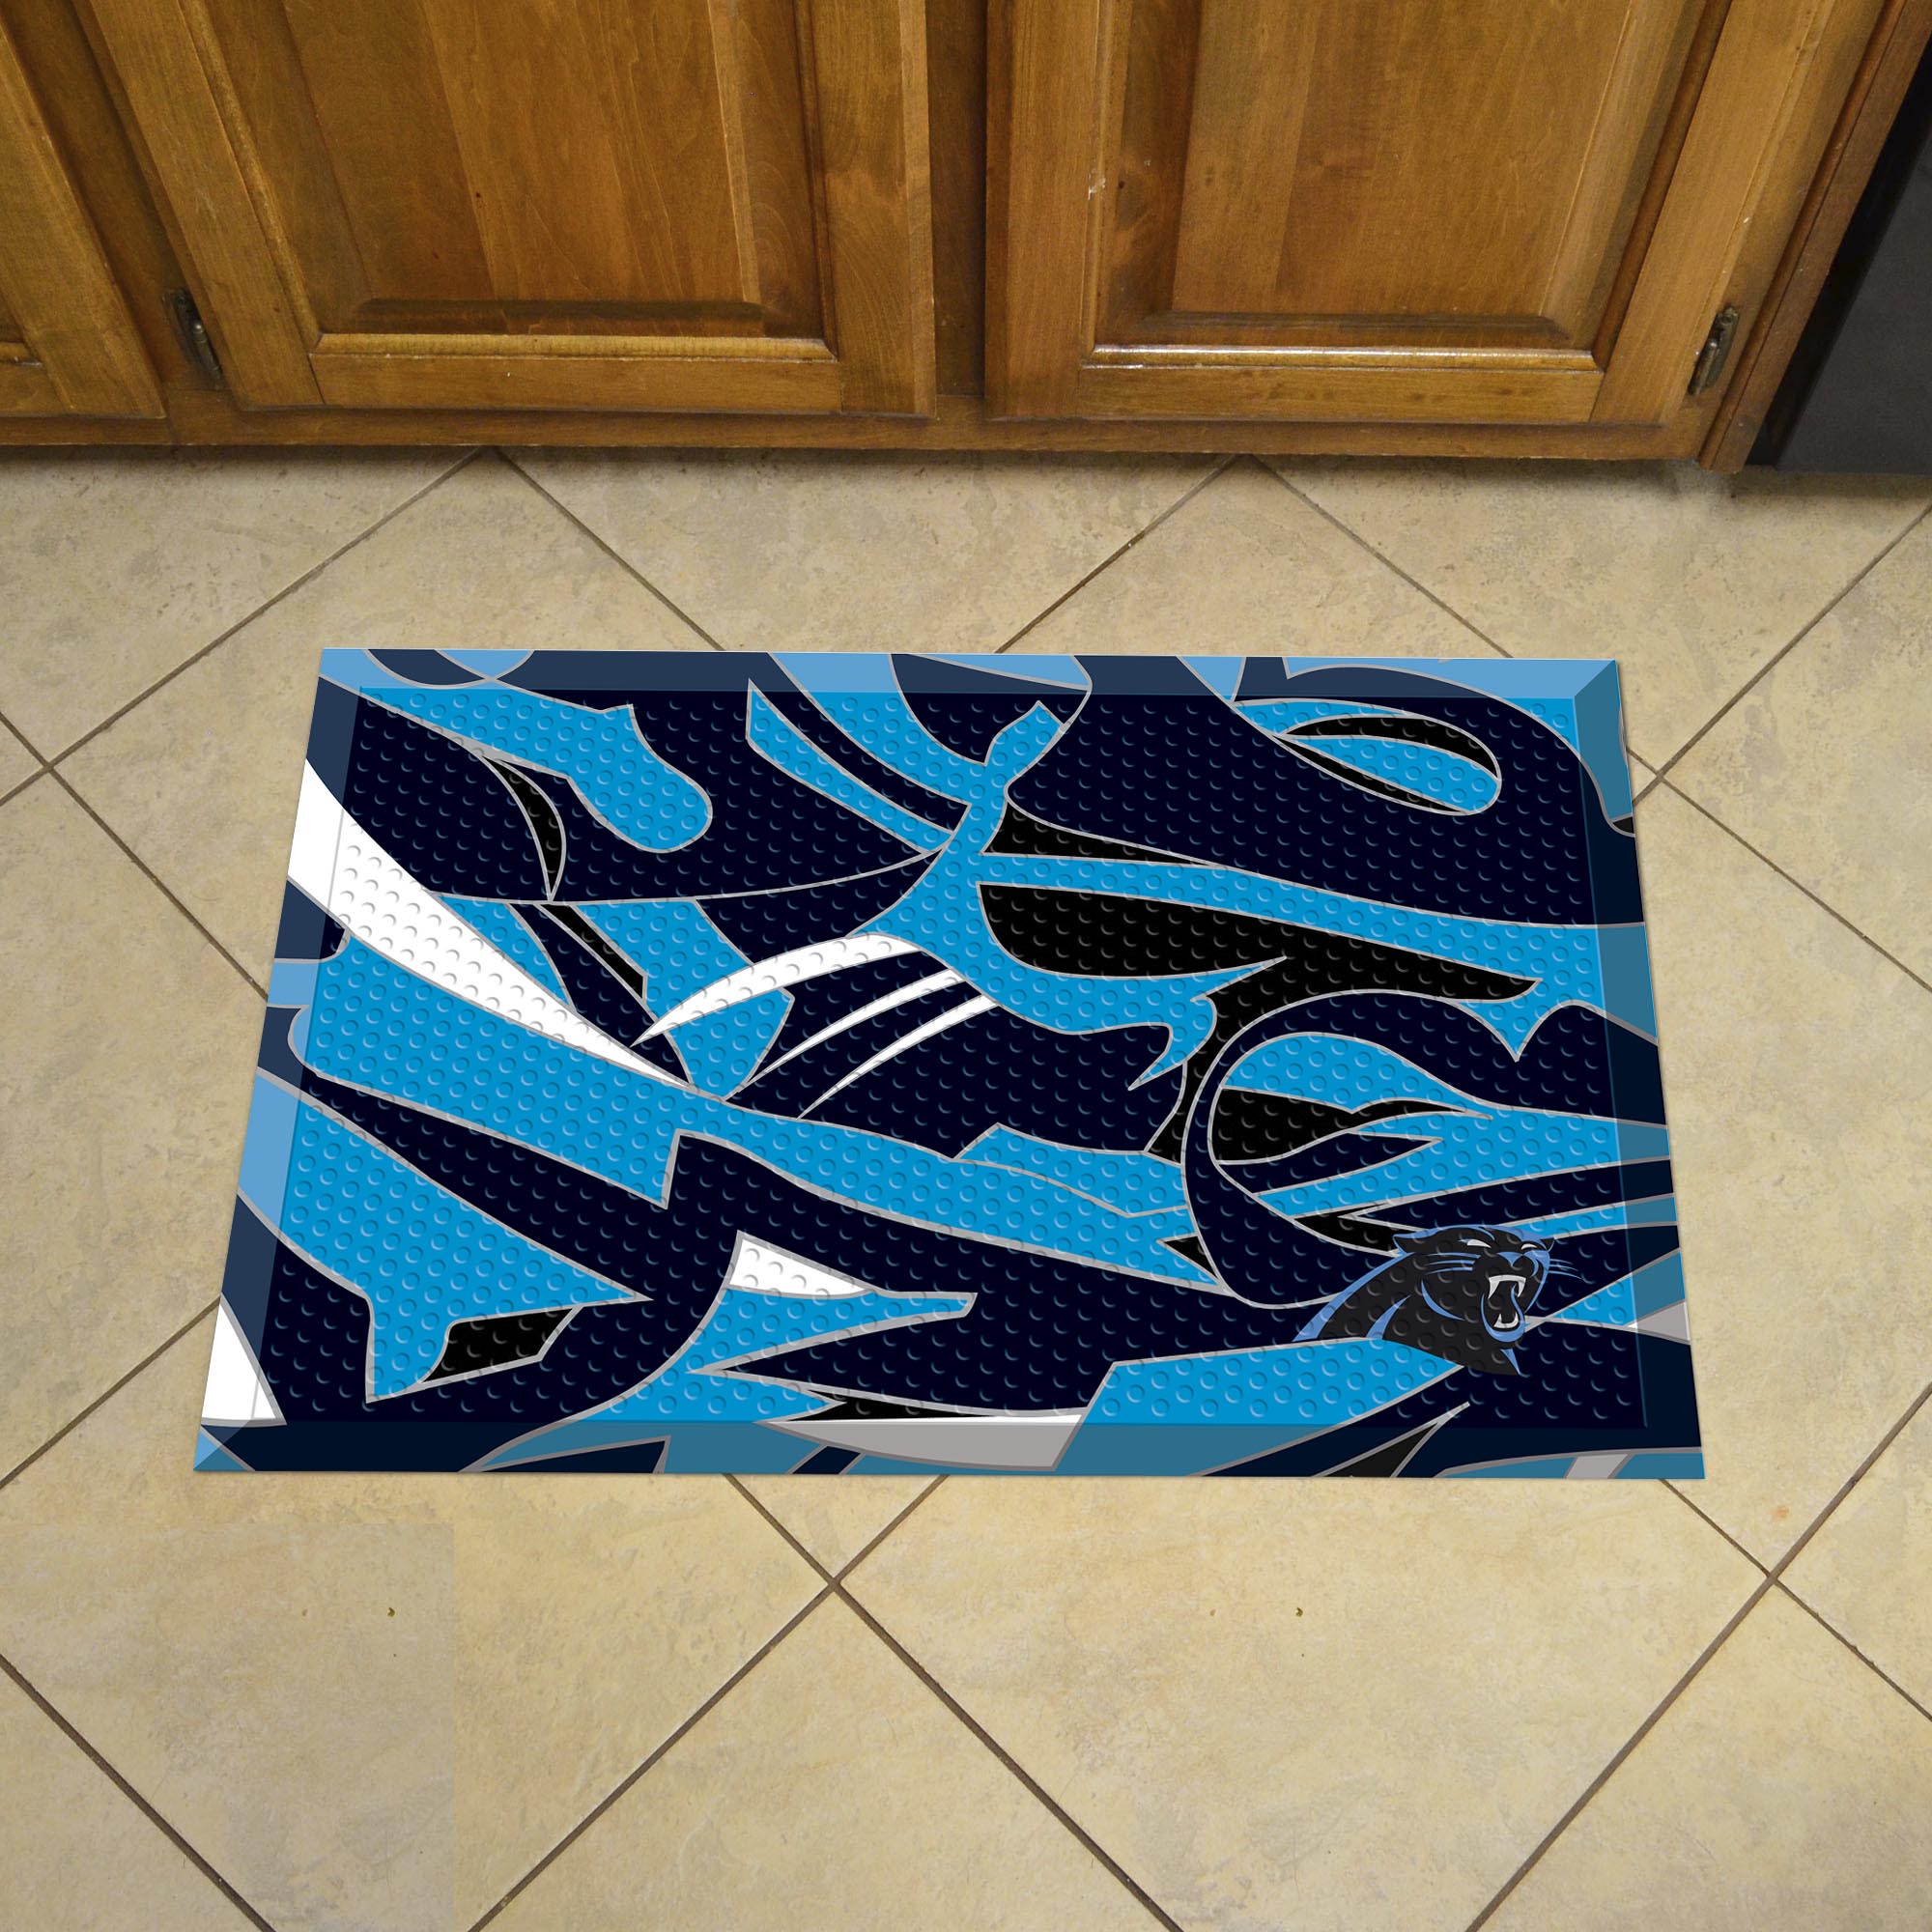 Carolina Panthers Quick Snap Scrapper Doormat - 19 x 30 rubber